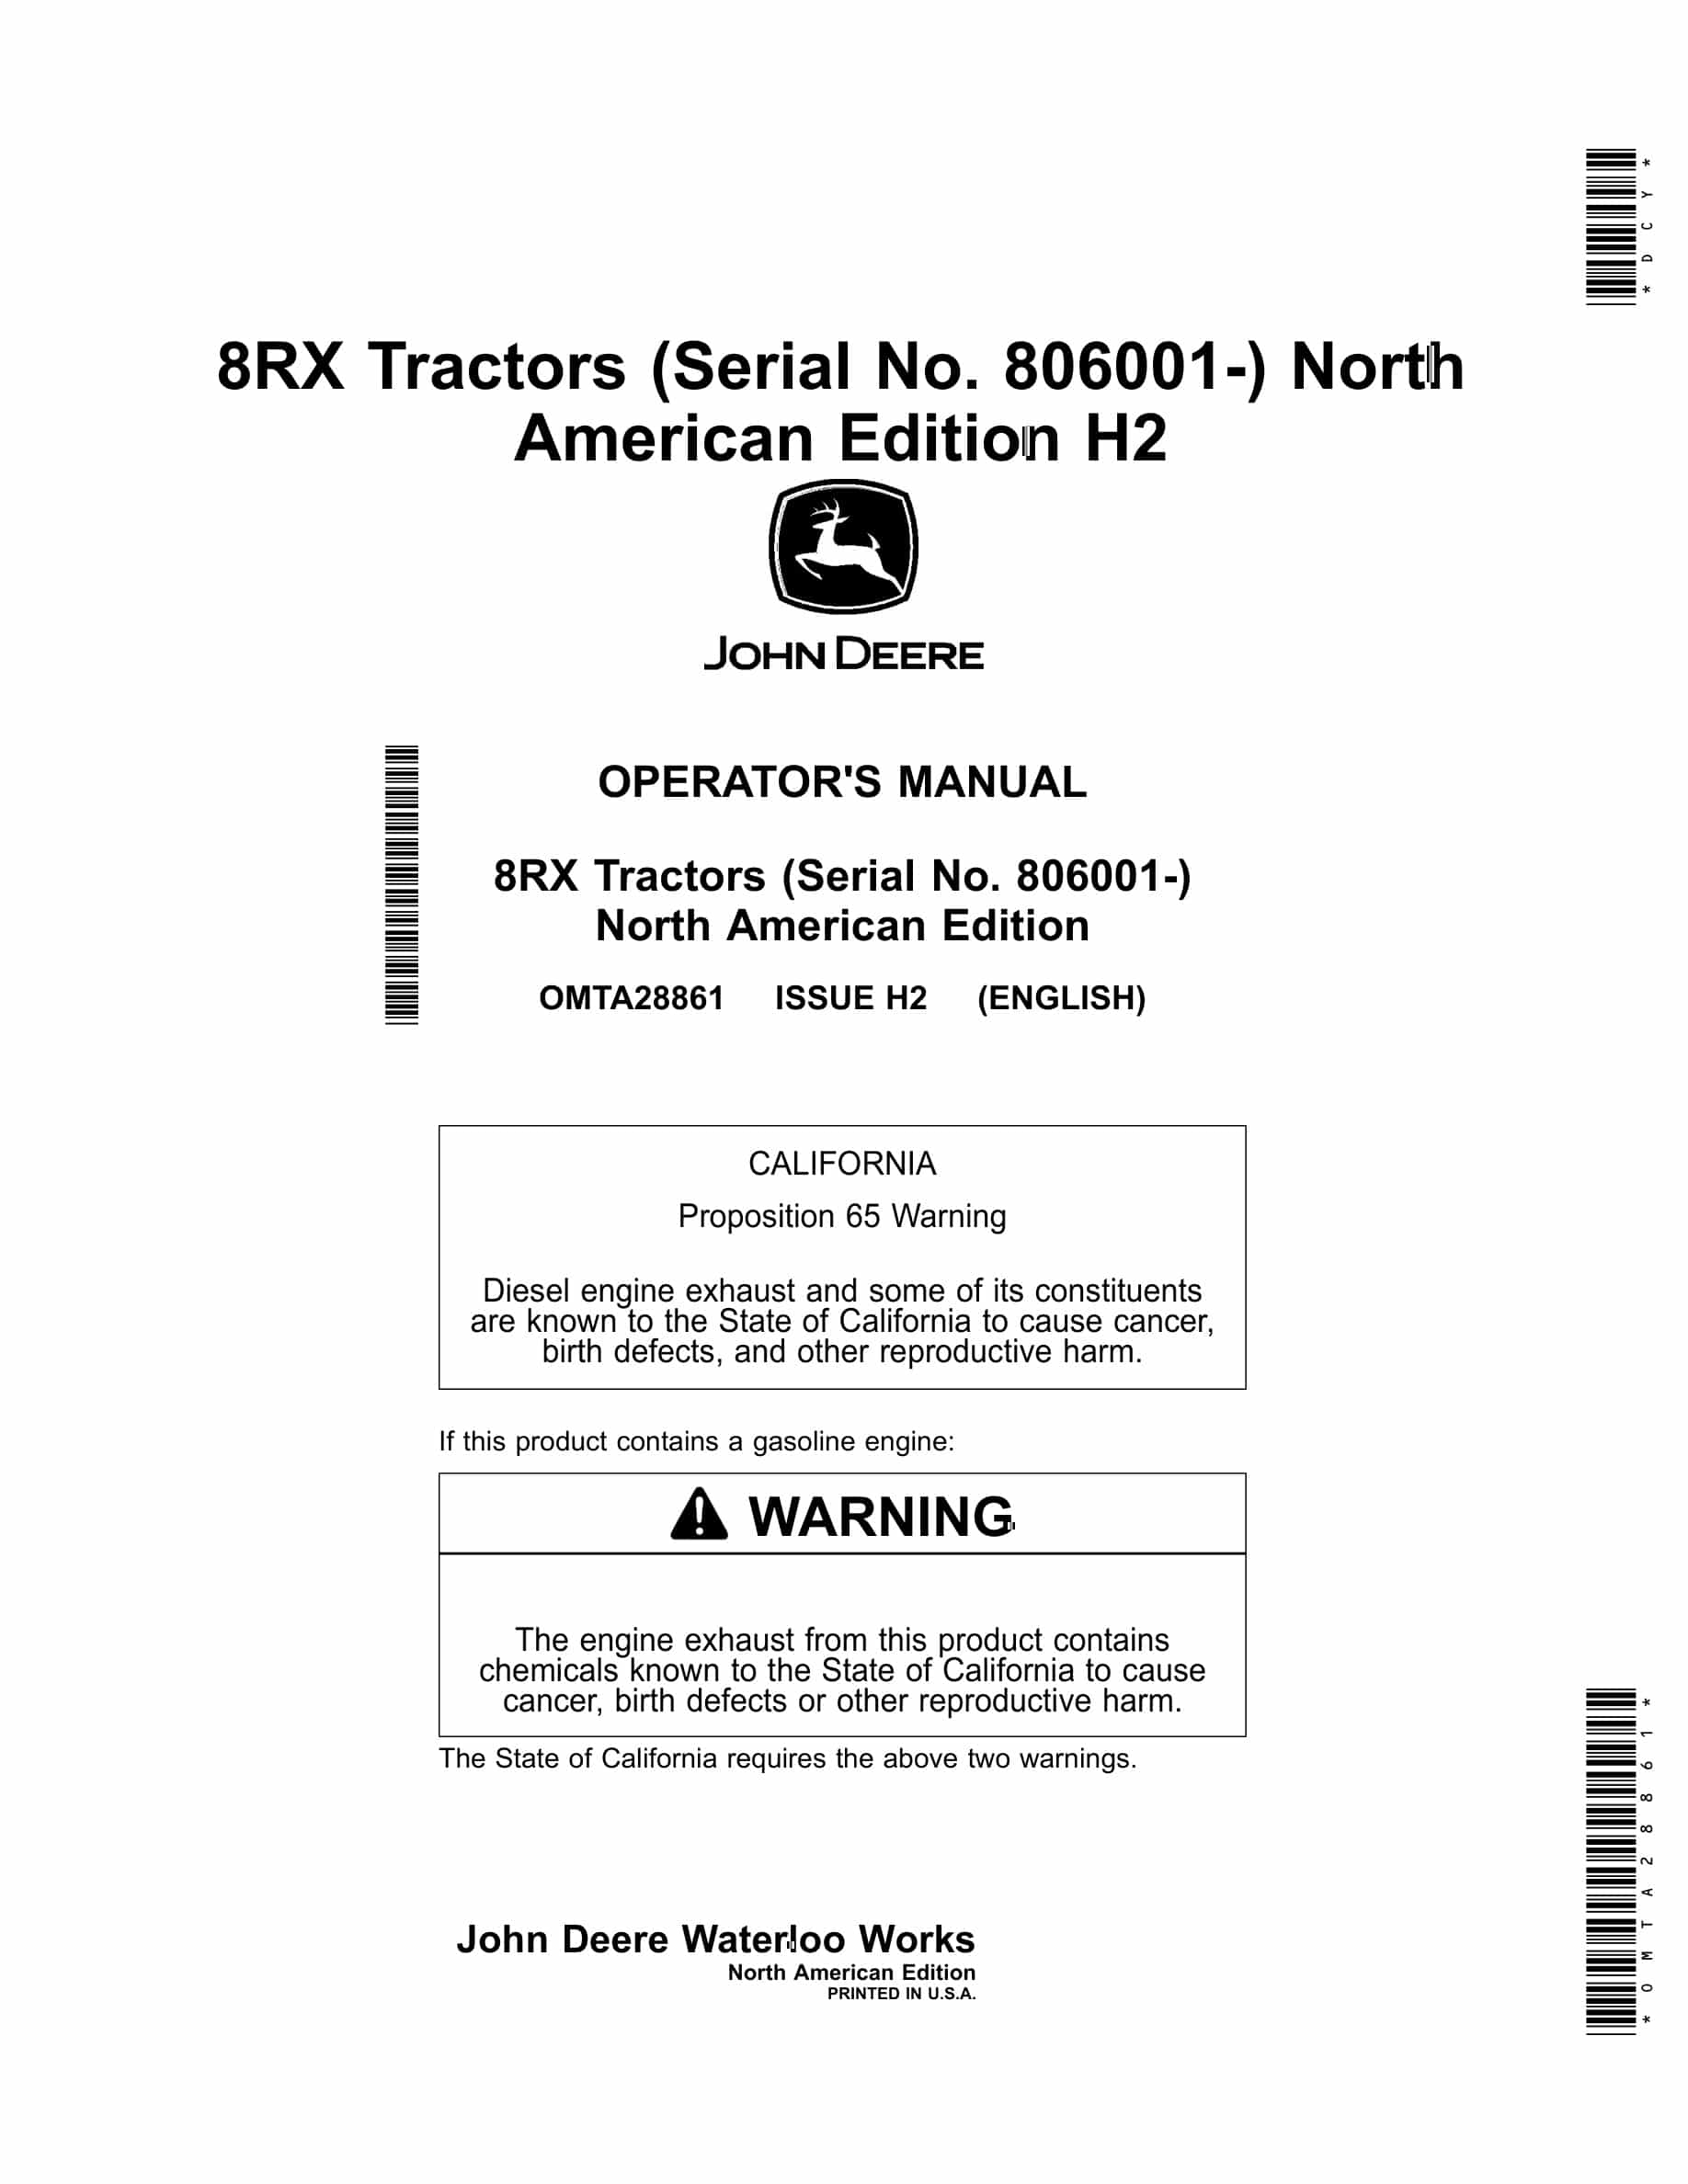 John Deere 8rx Tractors Operator Manuals OMTA28861-1